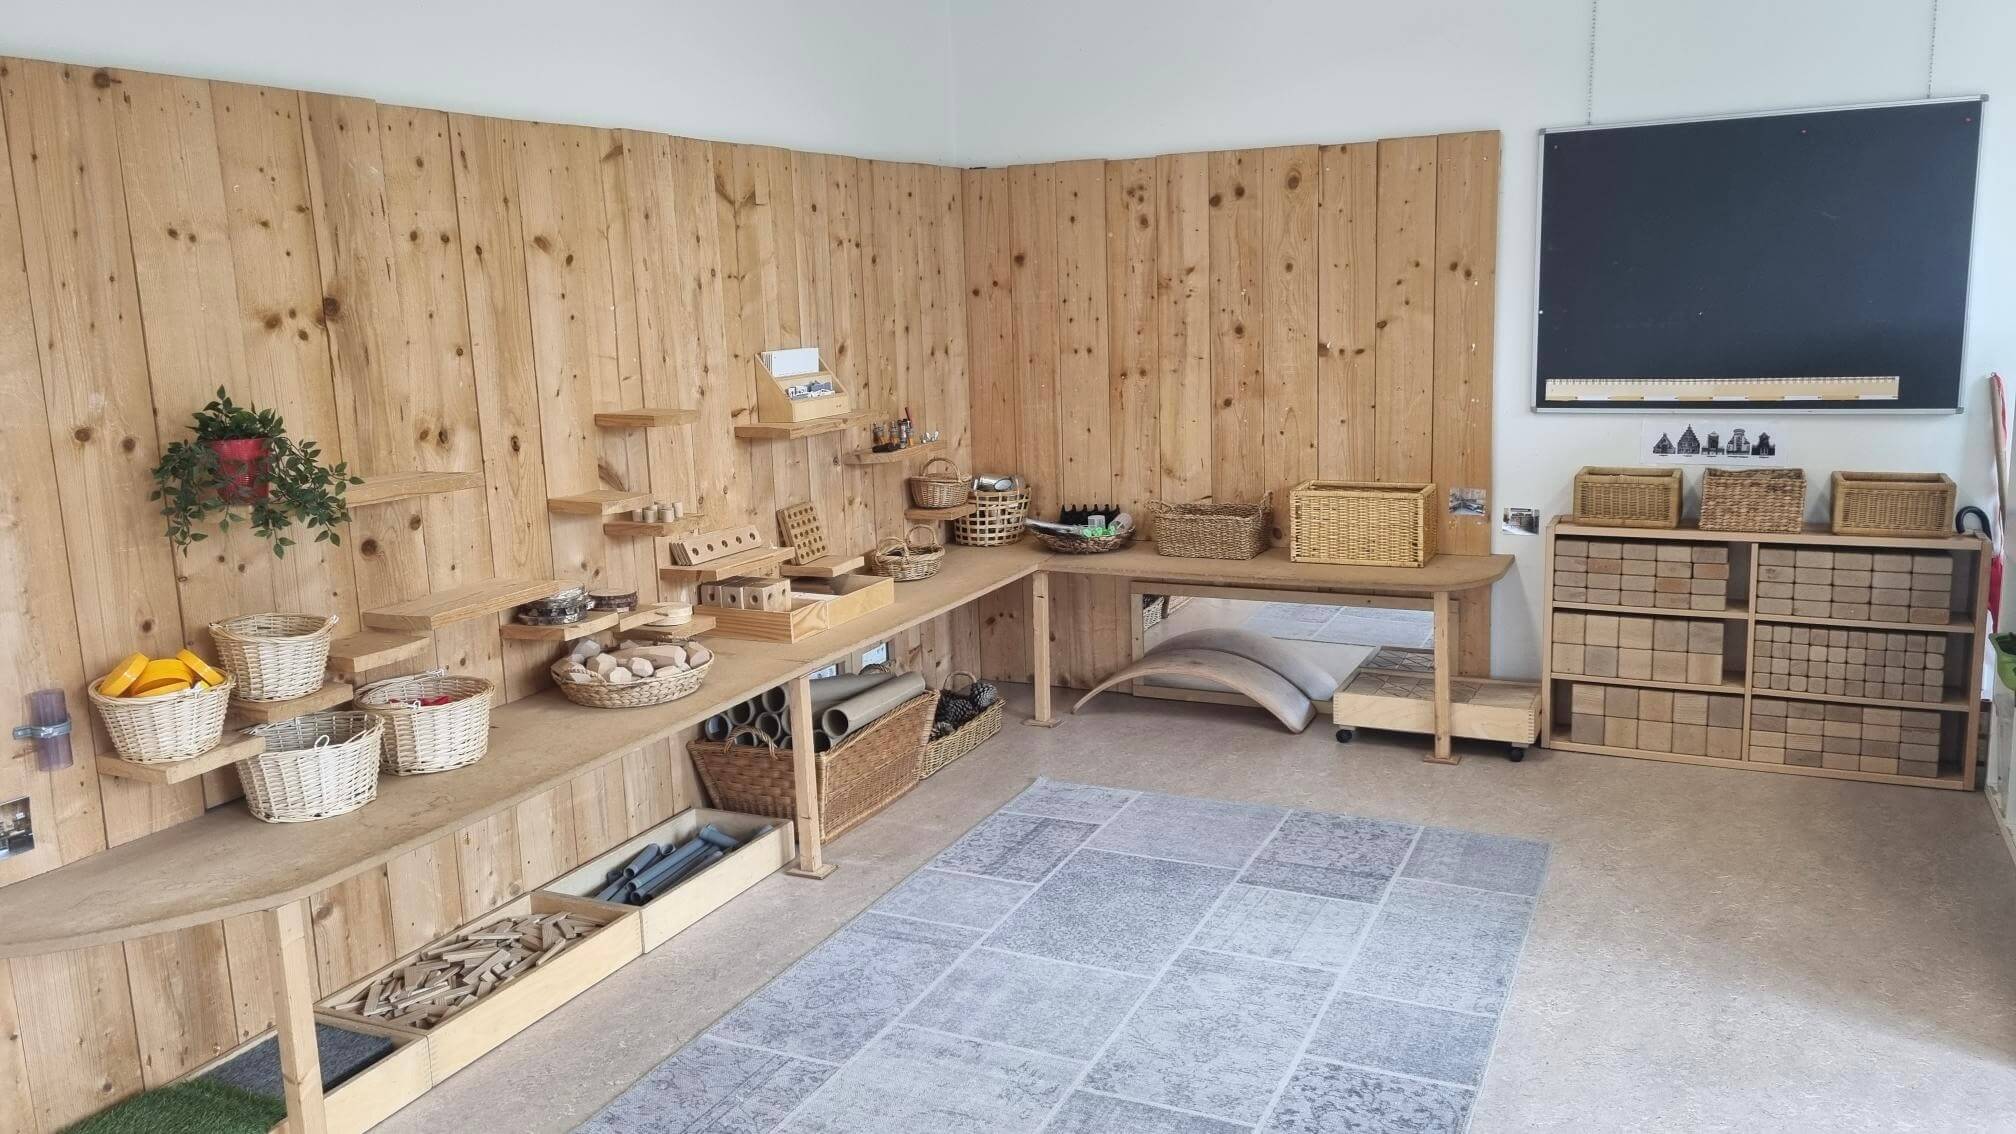 Het ruime bouwatelier in het lokaal van Brechje Verhelle: “Het liefst beslaat een bouwhoek of -atelier een derde van je lokaal.